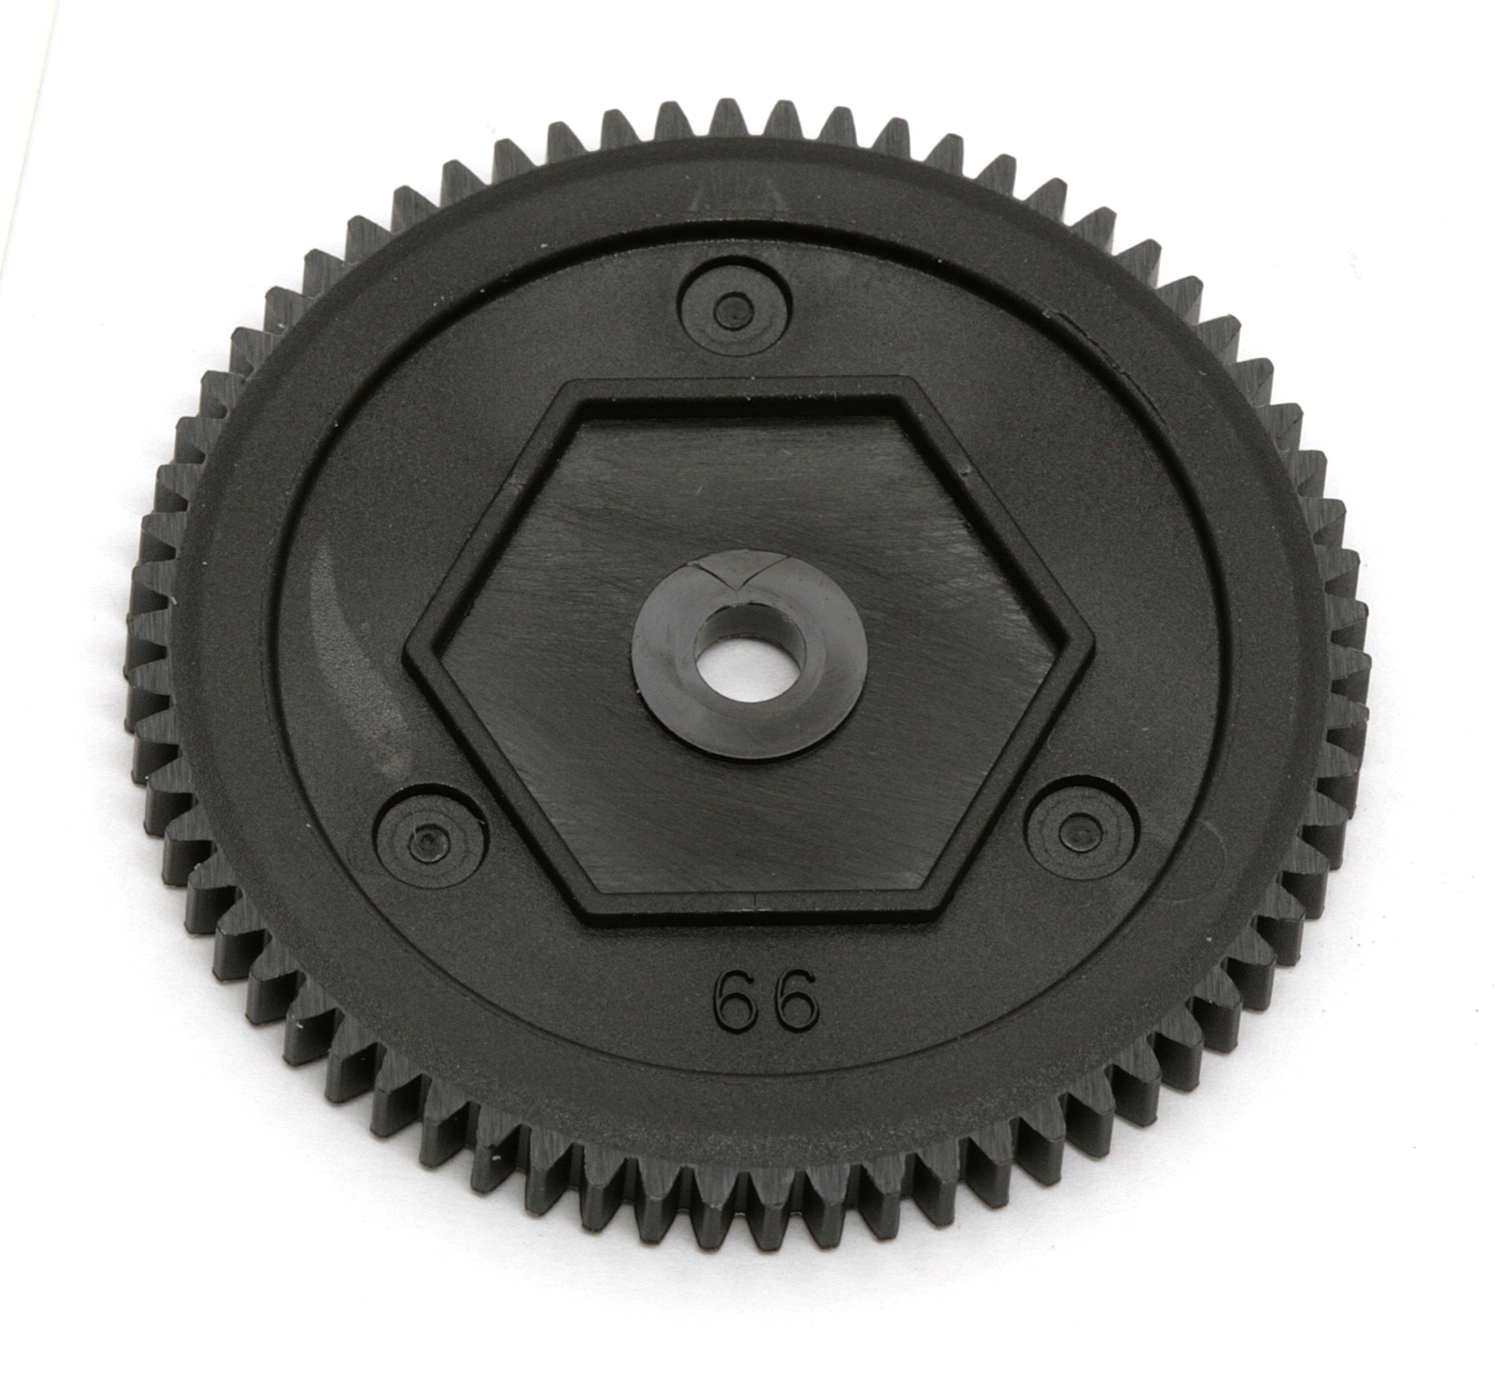 Spur Gear, 66T Mod 0.5P